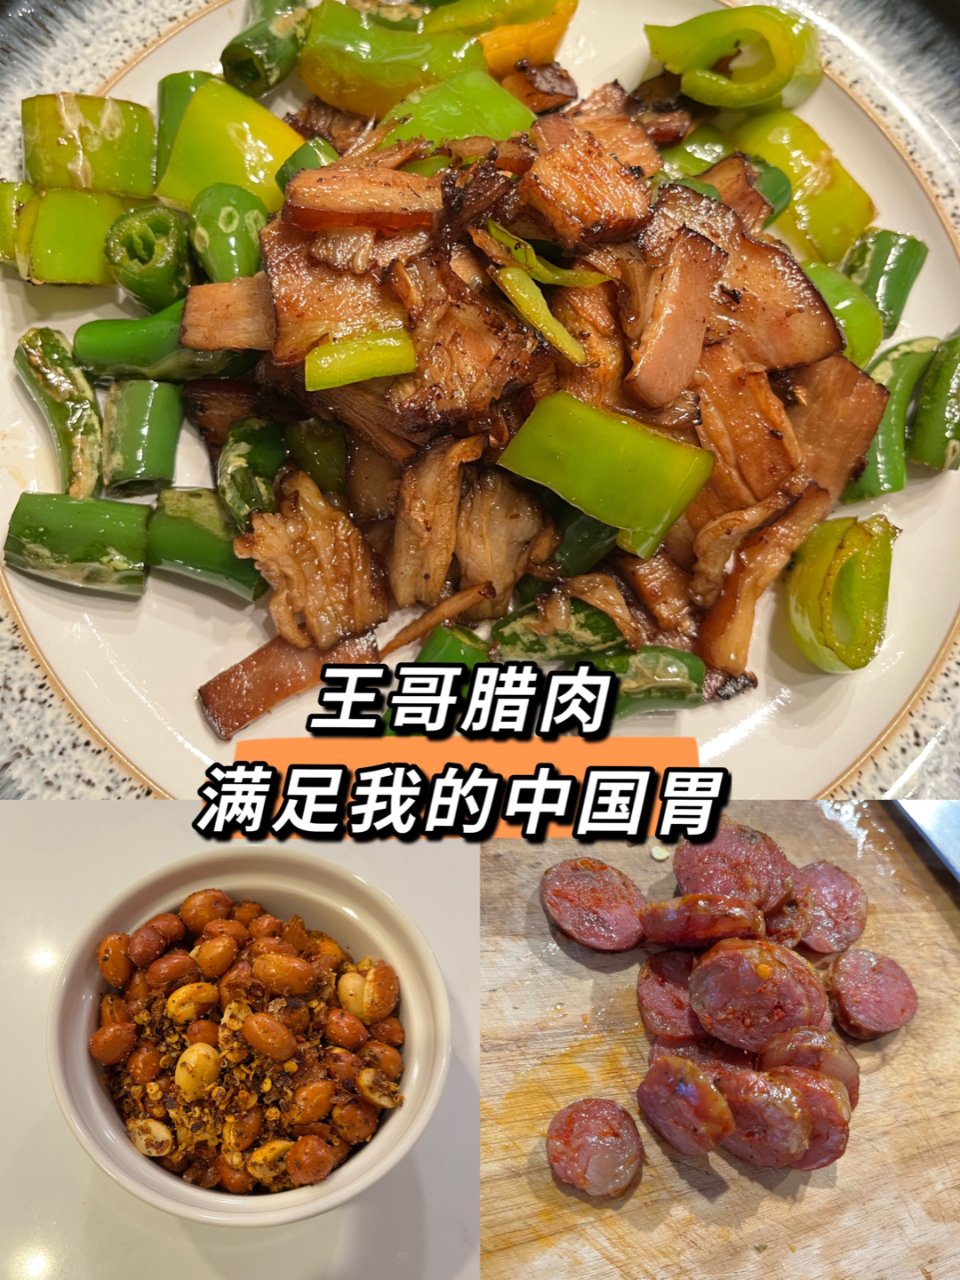 王哥腊肉/🈵️足我的中国胃😍—坚决回购！...